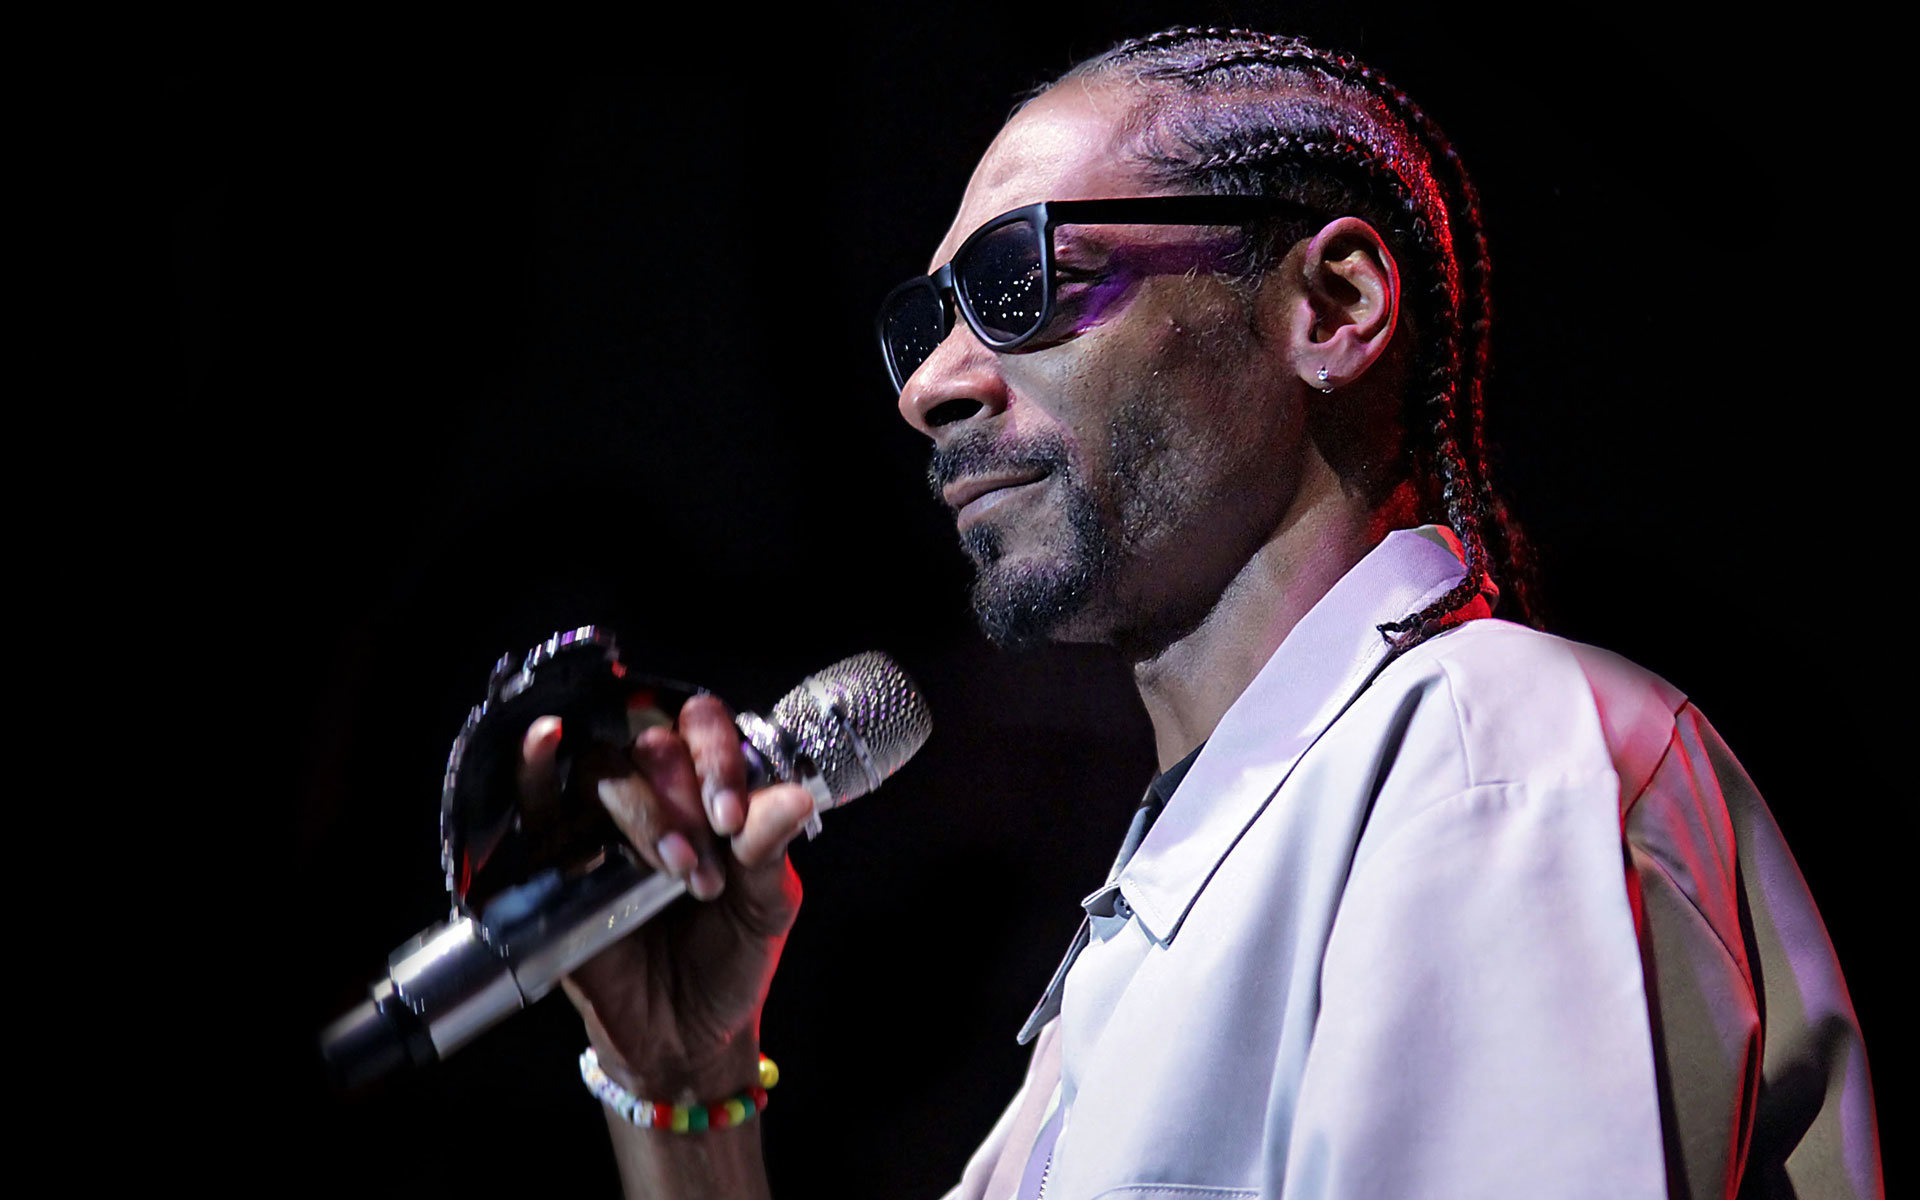 Snoop Dogg, HD wallpapers, Desktop backgrounds, Visual delight, 1920x1200 HD Desktop